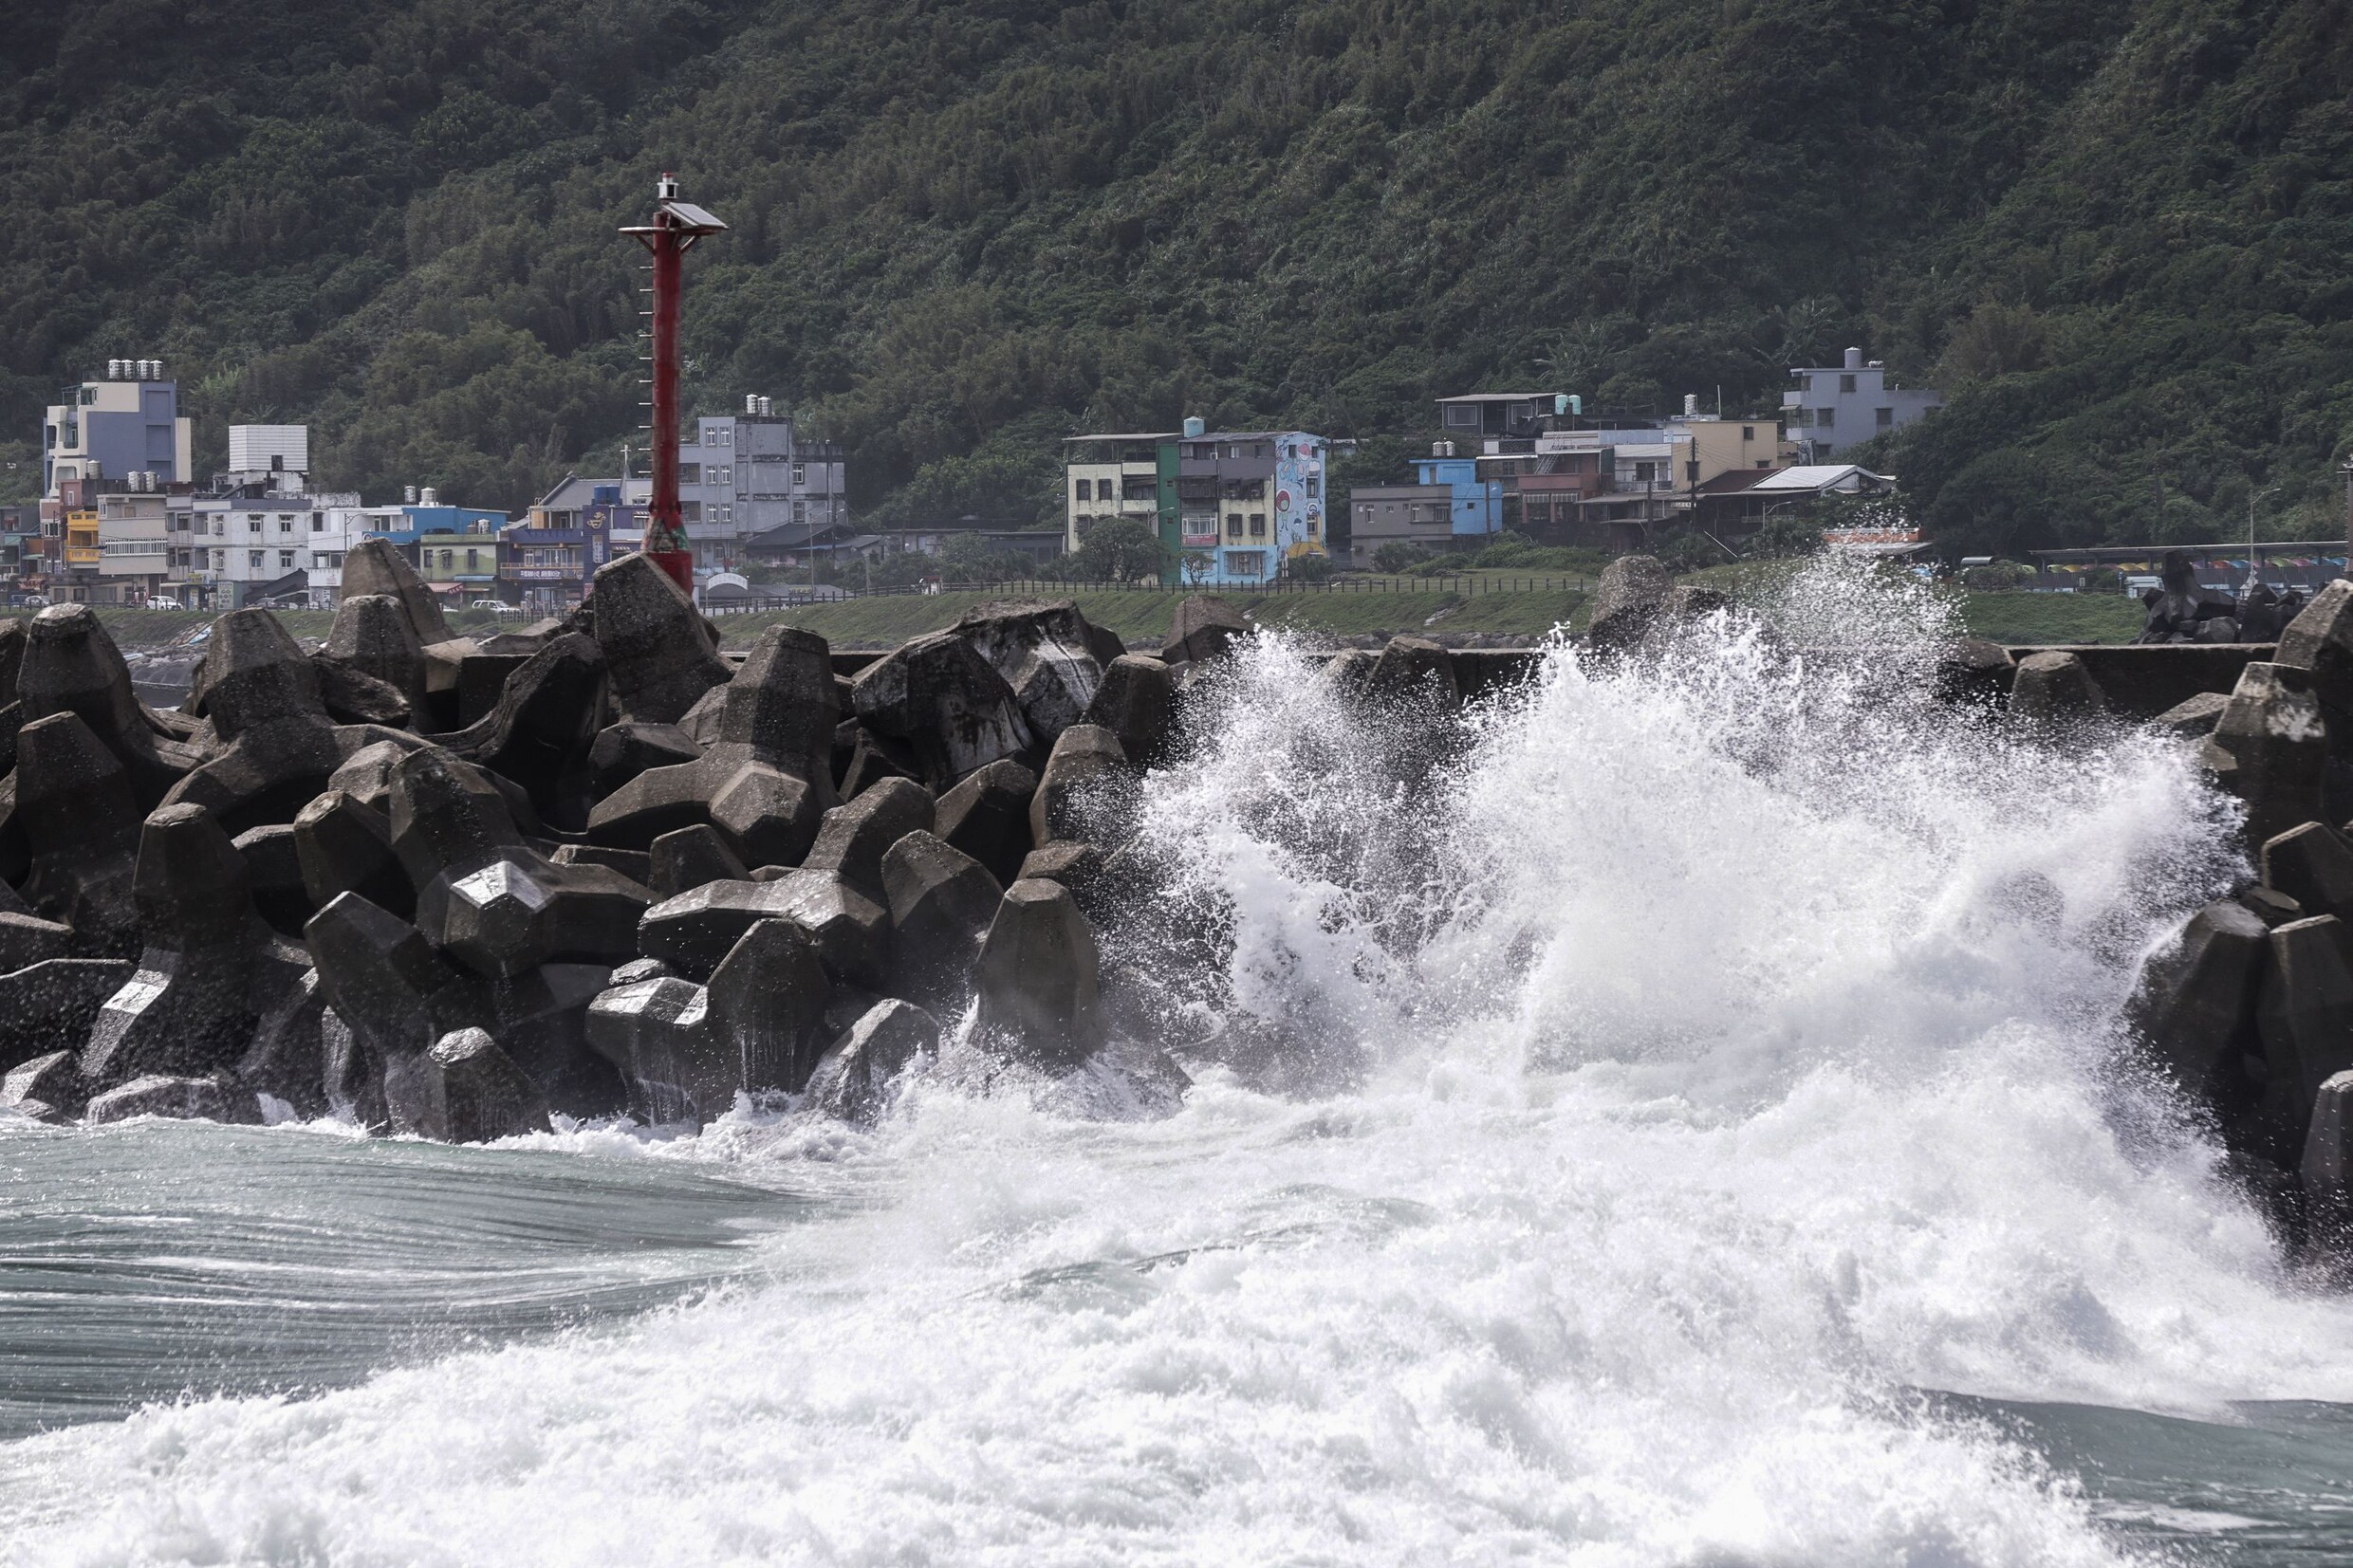 Tyfoon Koinu raast met recordsnelheden over Taiwan: minstens 190 gewonden